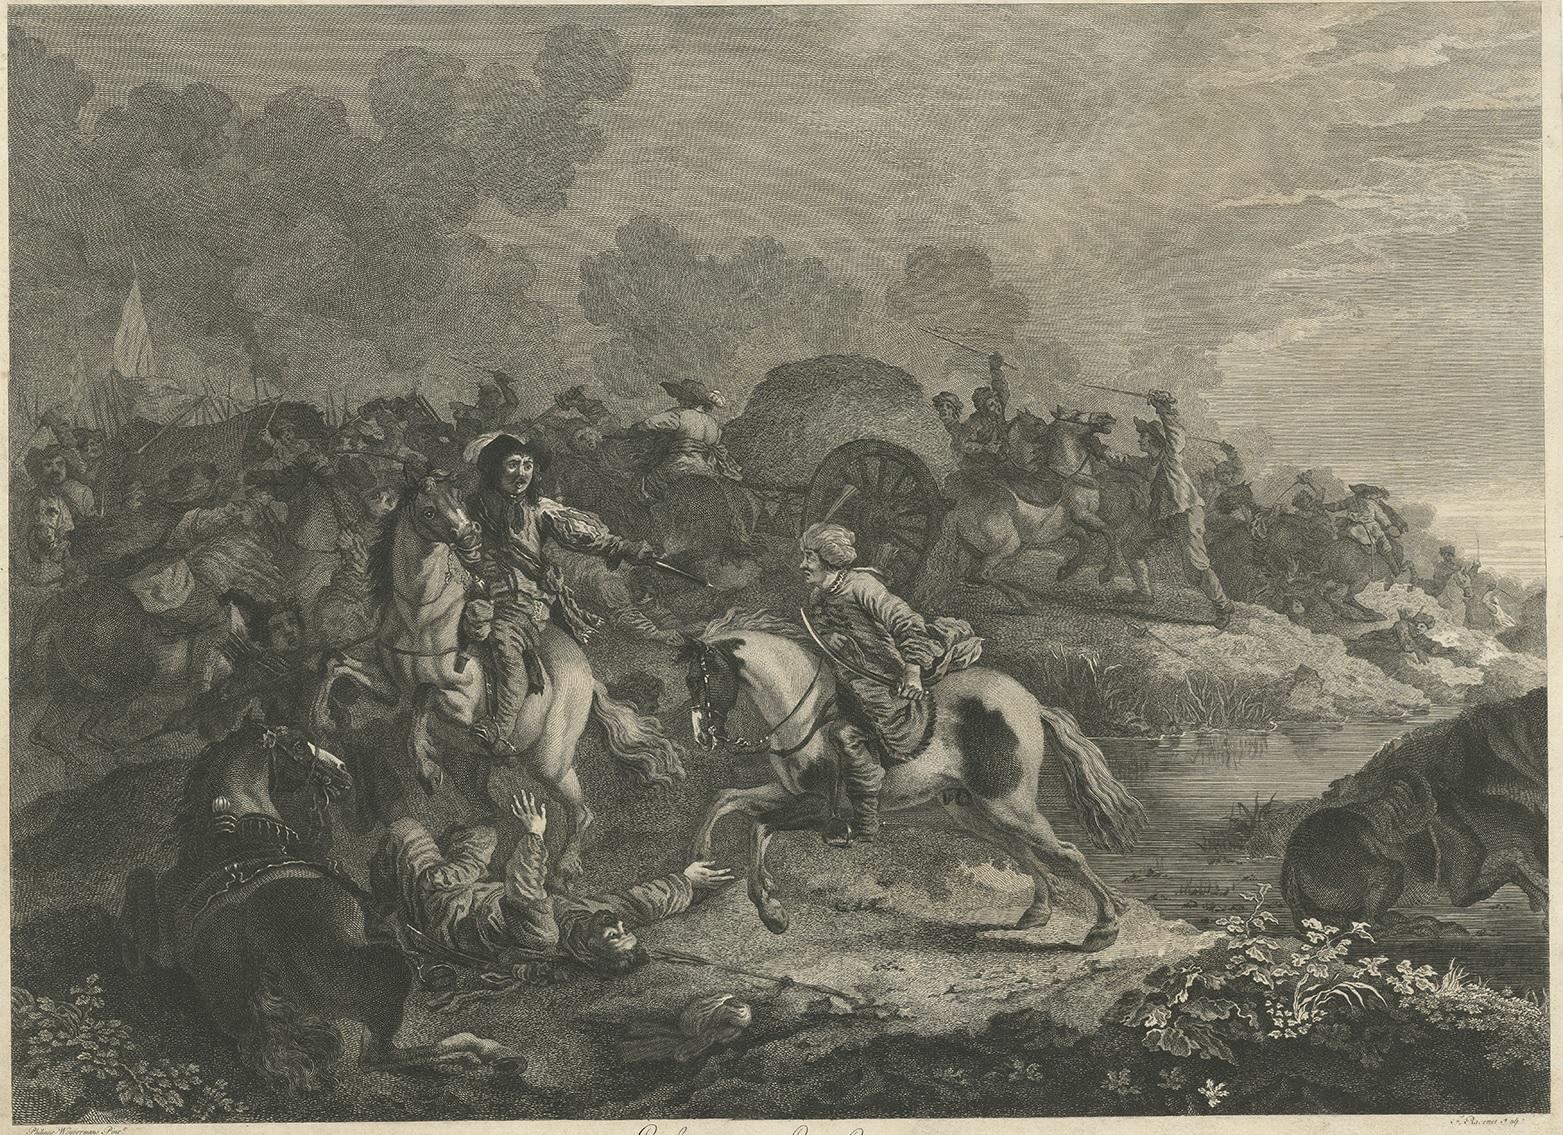 Gravure ancienne intitulée 'Enlevement dun Convoy'. Impression ancienne de soldats attaquant un convoi ottoman. Au premier plan, un cavalier, dont le cheval cabré piétine un ennemi tombé, tire sur un soldat enturbanné chevauchant un cheval au galop